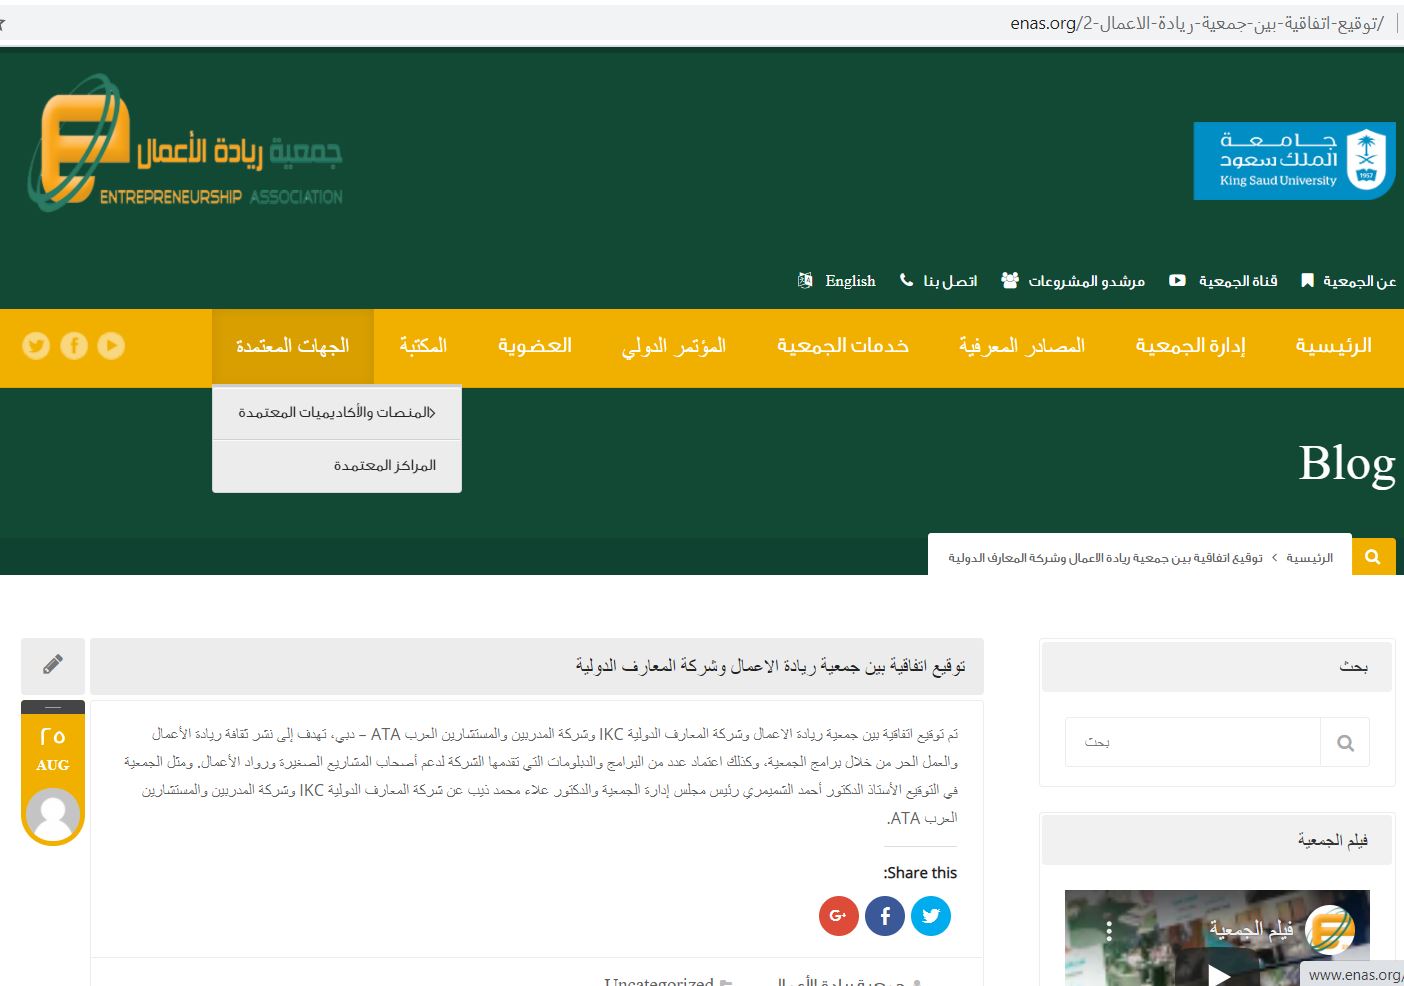 خبر توقيع الاتفاقية مع جمعية ريادة الأعمال بجامعة الملك سعود